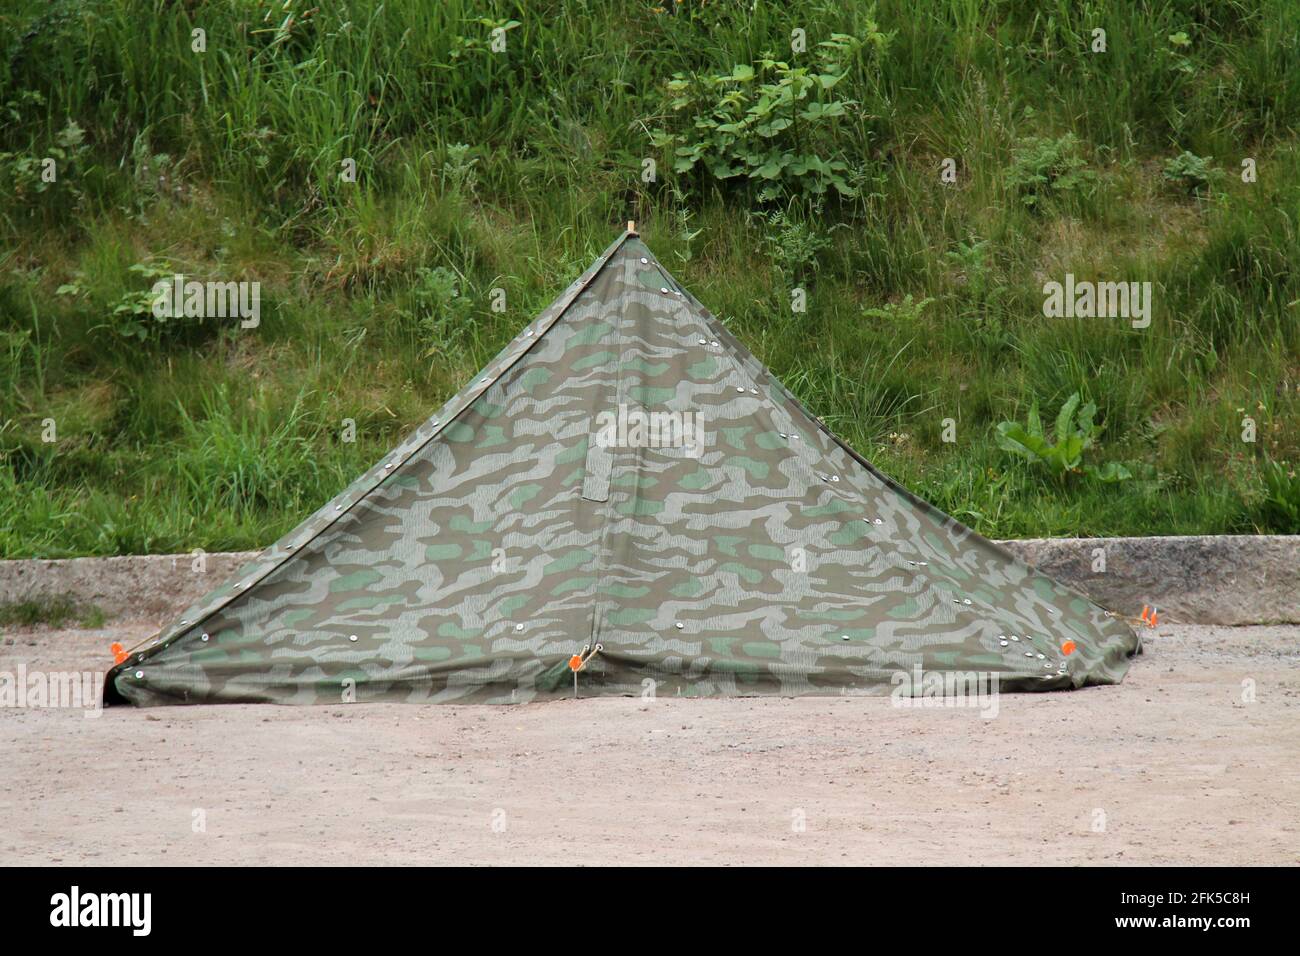 Une petite tente de camping en toile camouflage carré. Banque D'Images